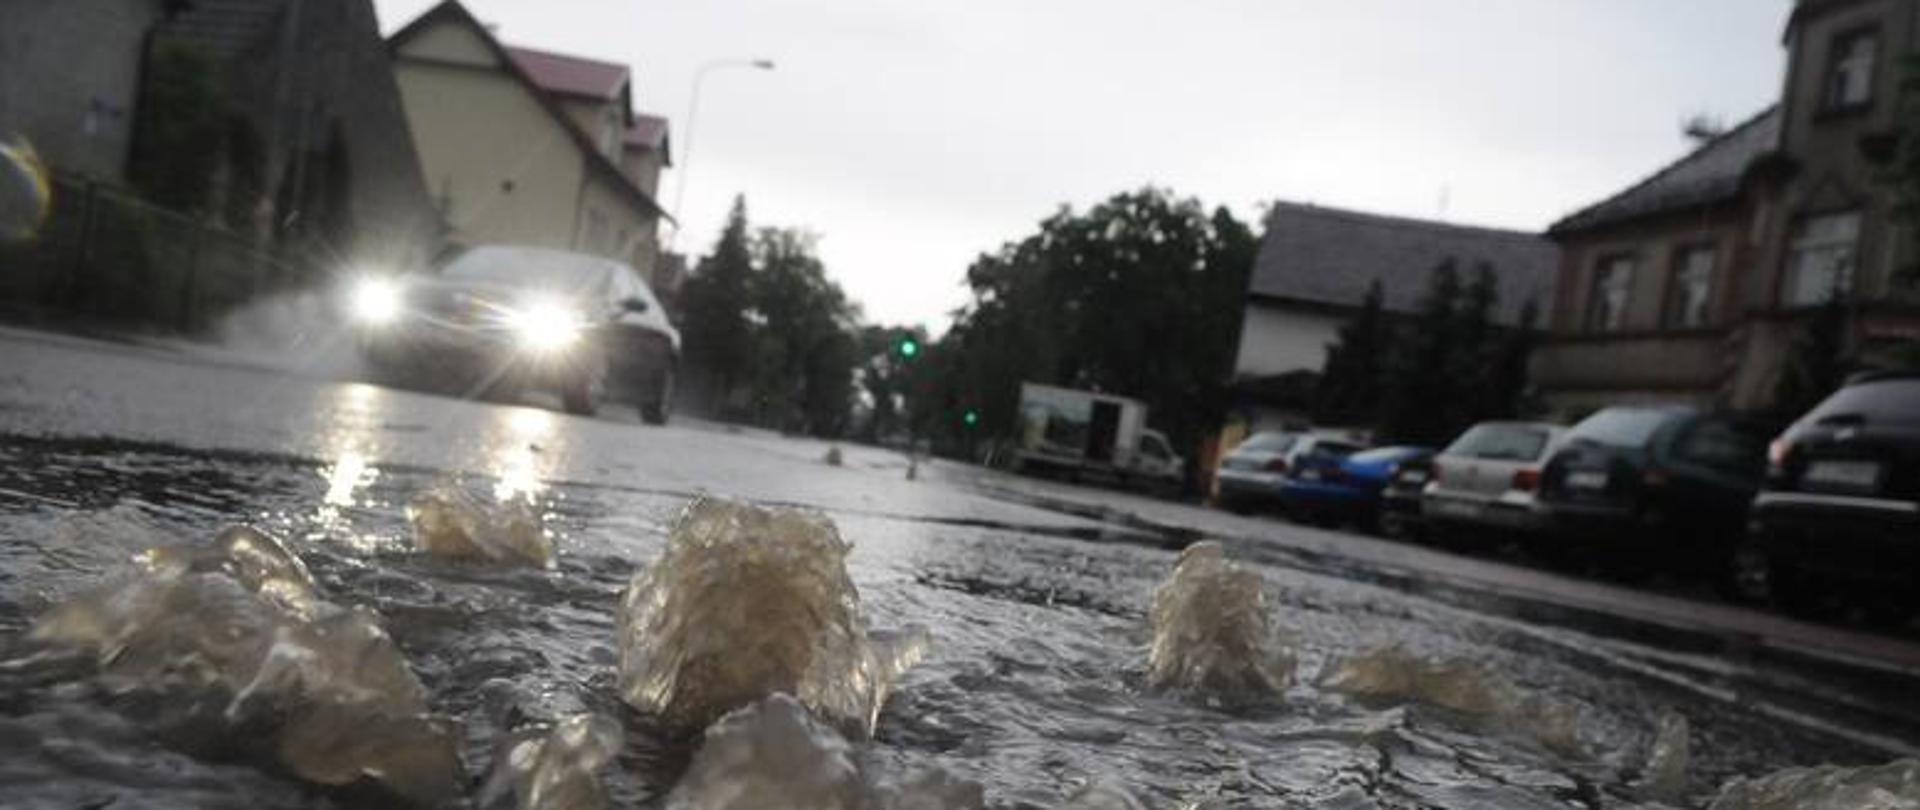 Woda zalewa ulicę